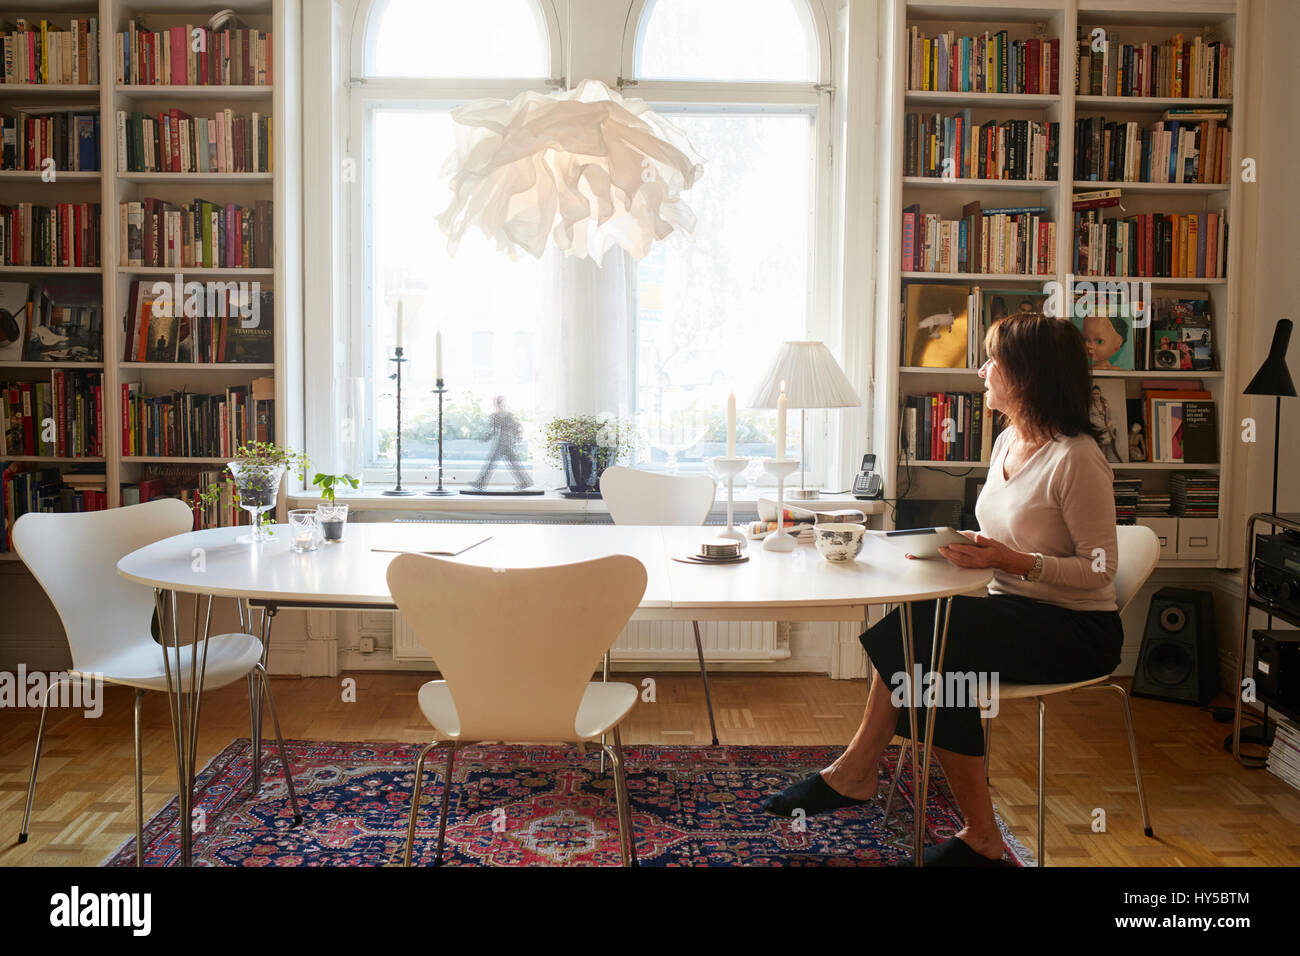 La Suède, femme assise seule à la table Banque D'Images